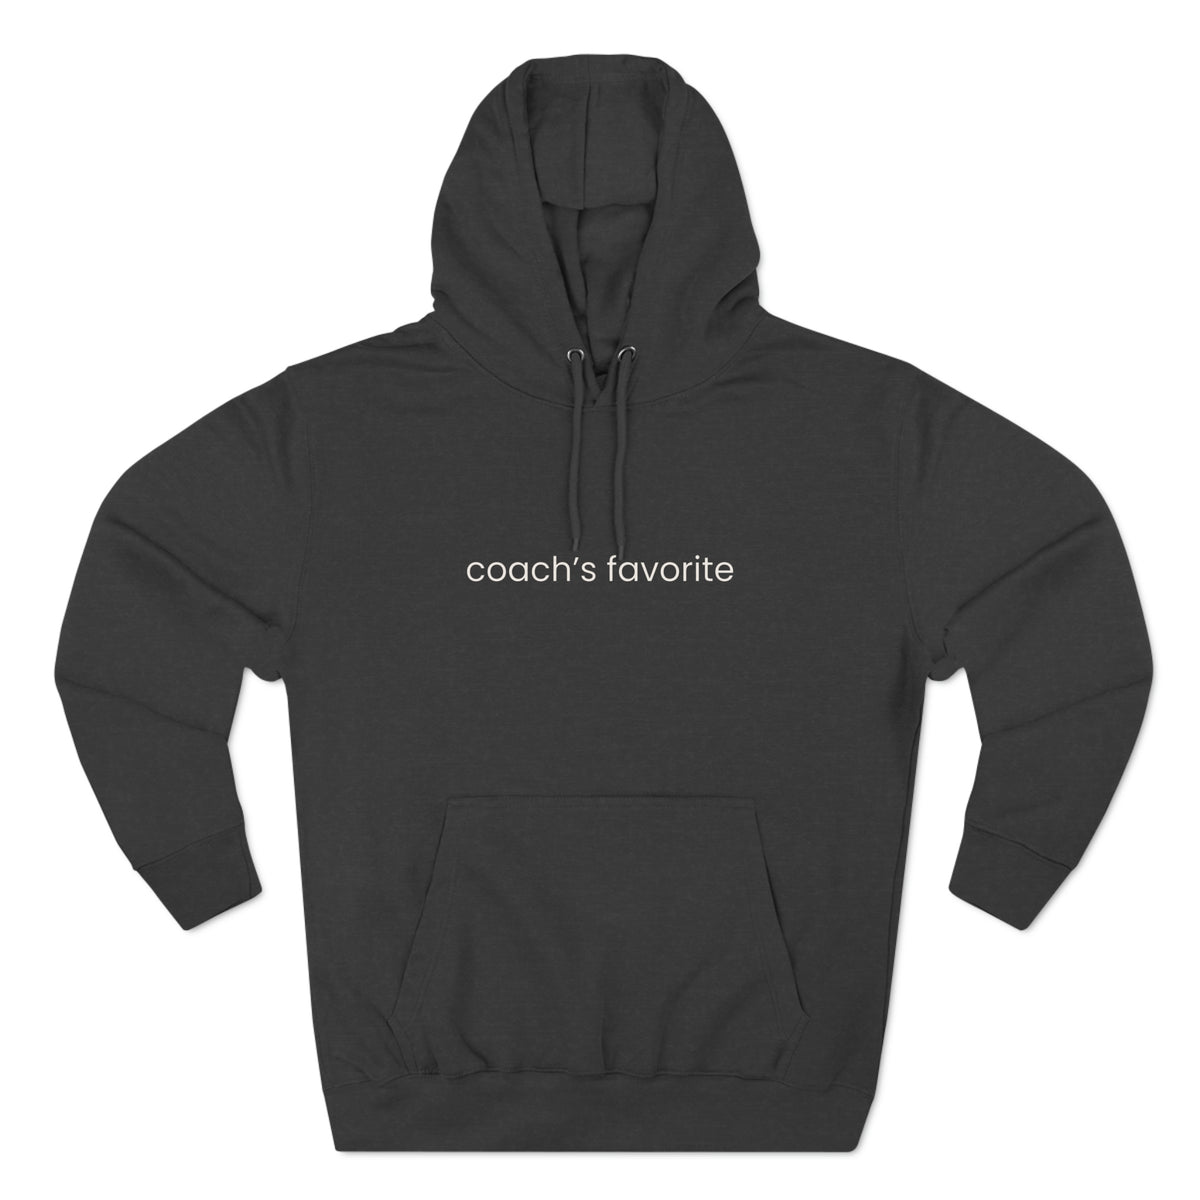 Coach's Favorite Adult Hooded Sweatshirt